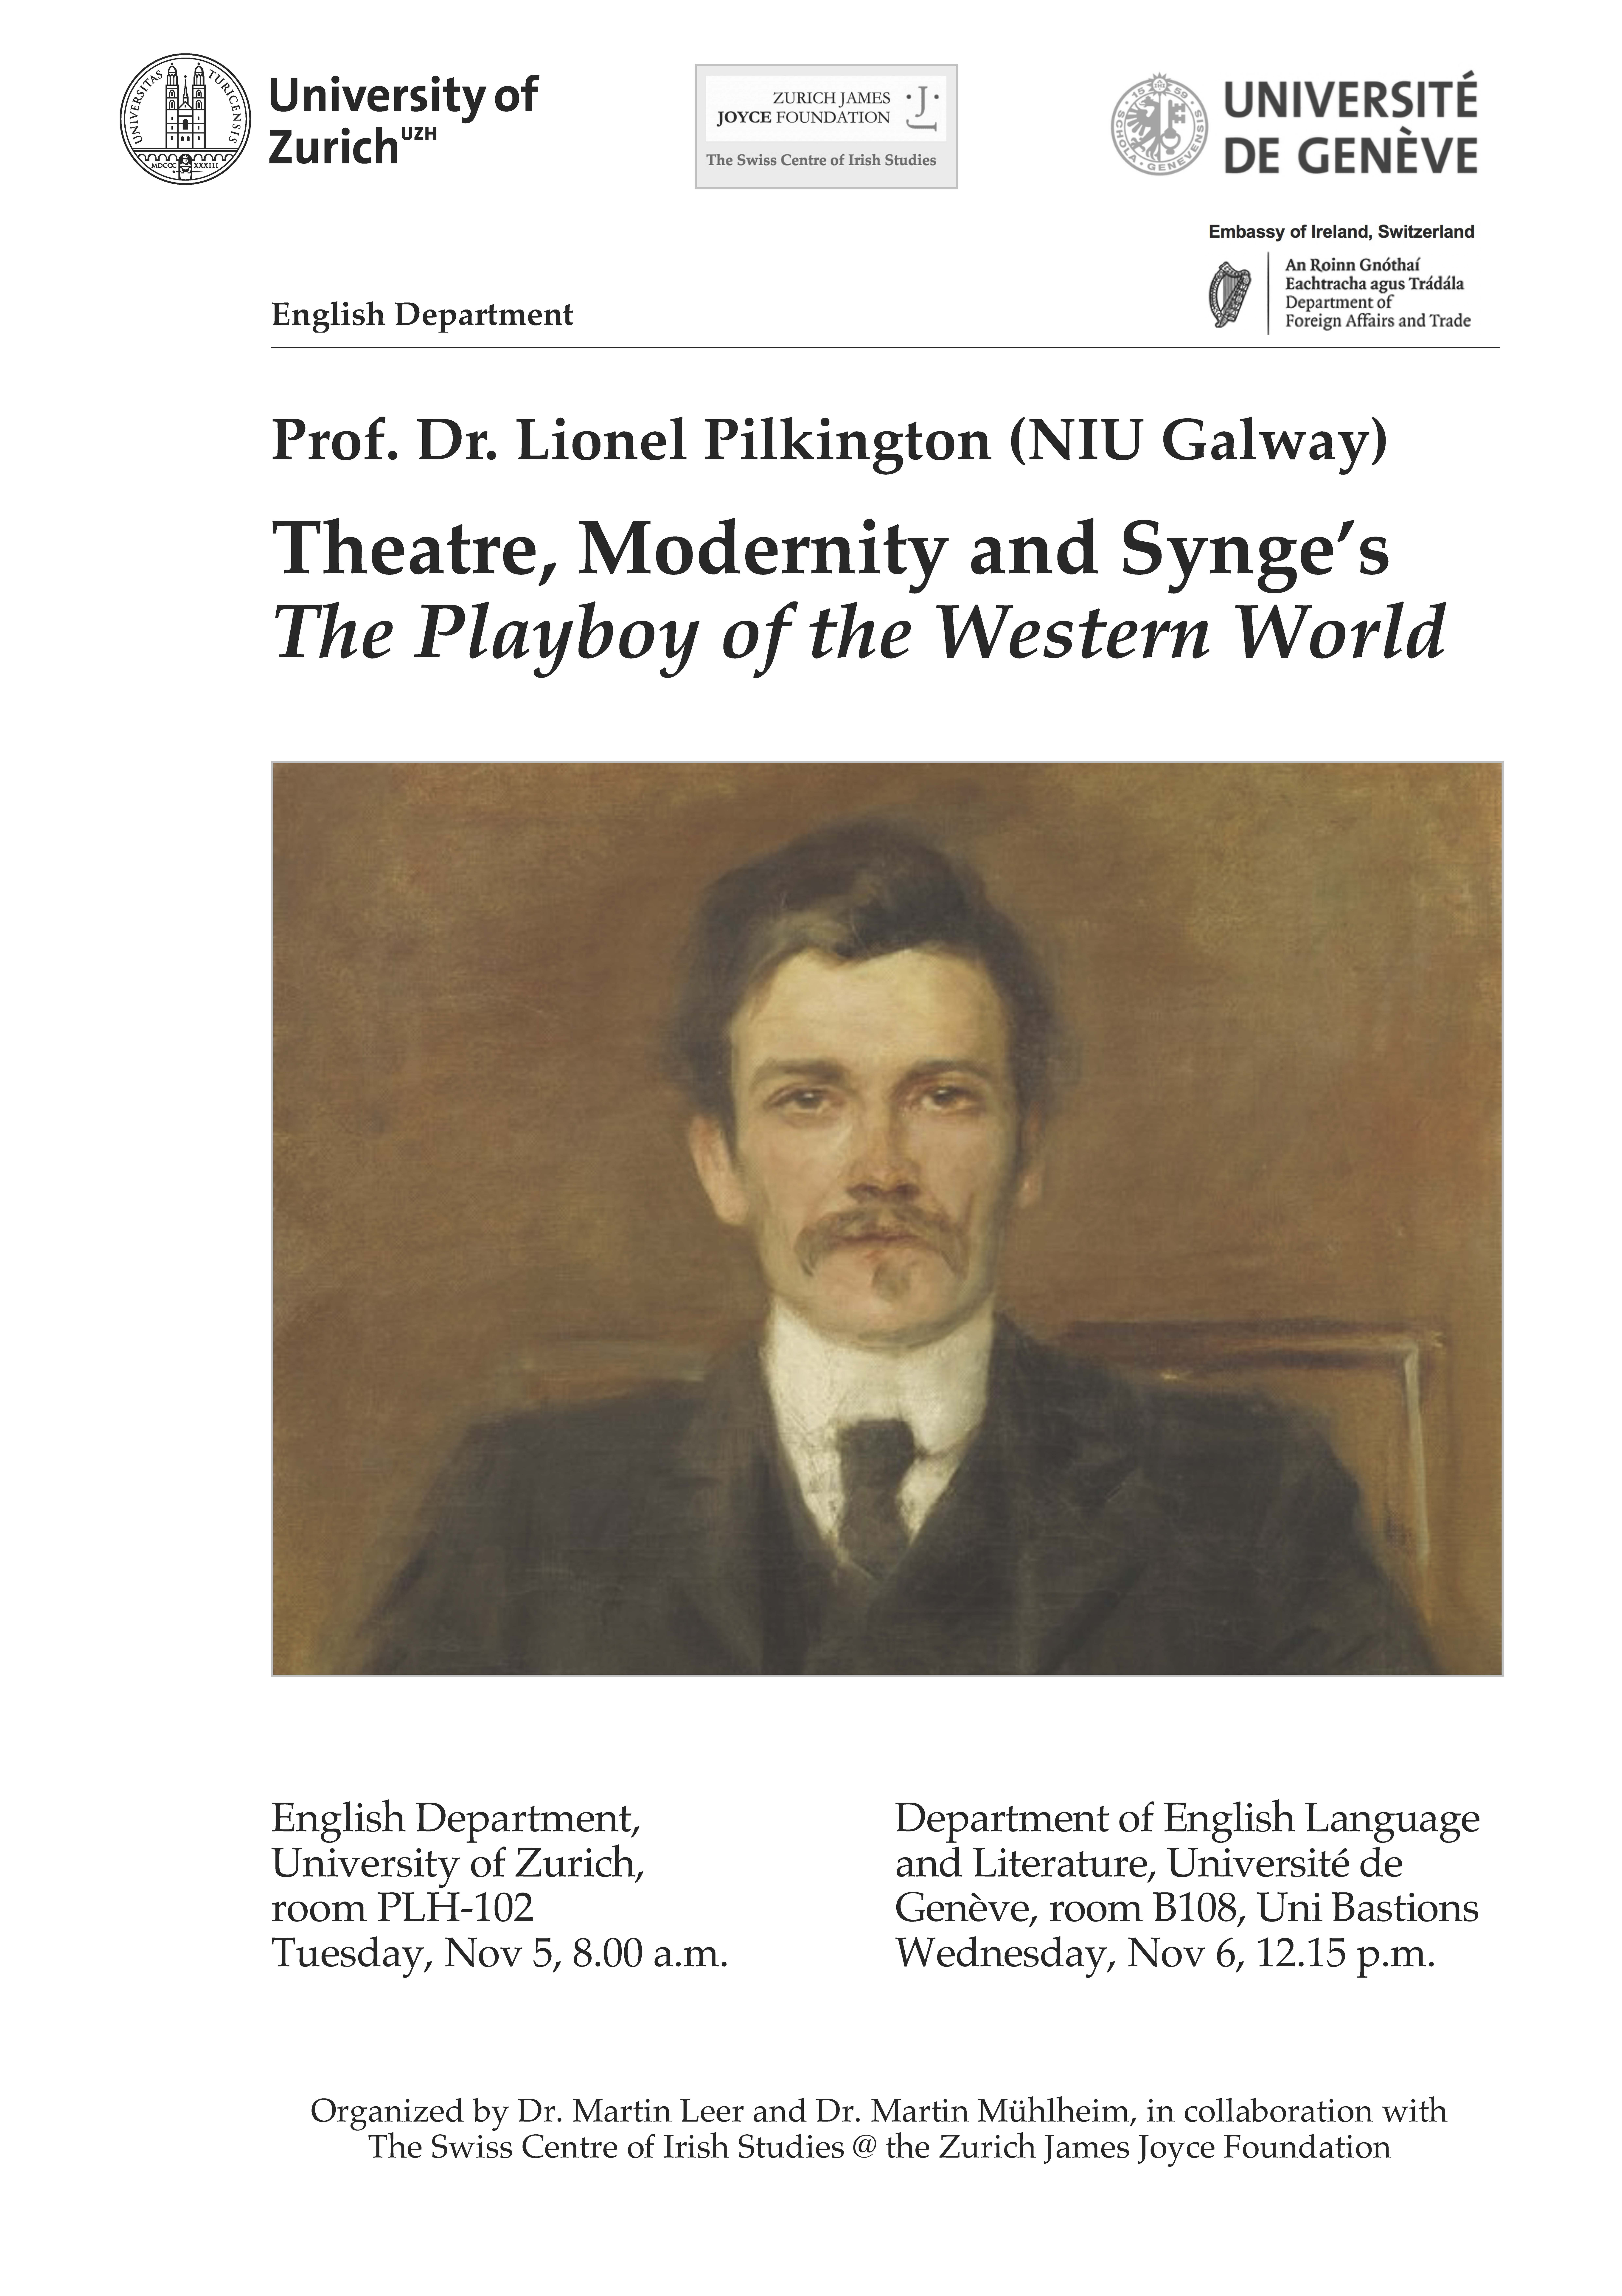 Guest Lecture Prof. Lionel Pilkington